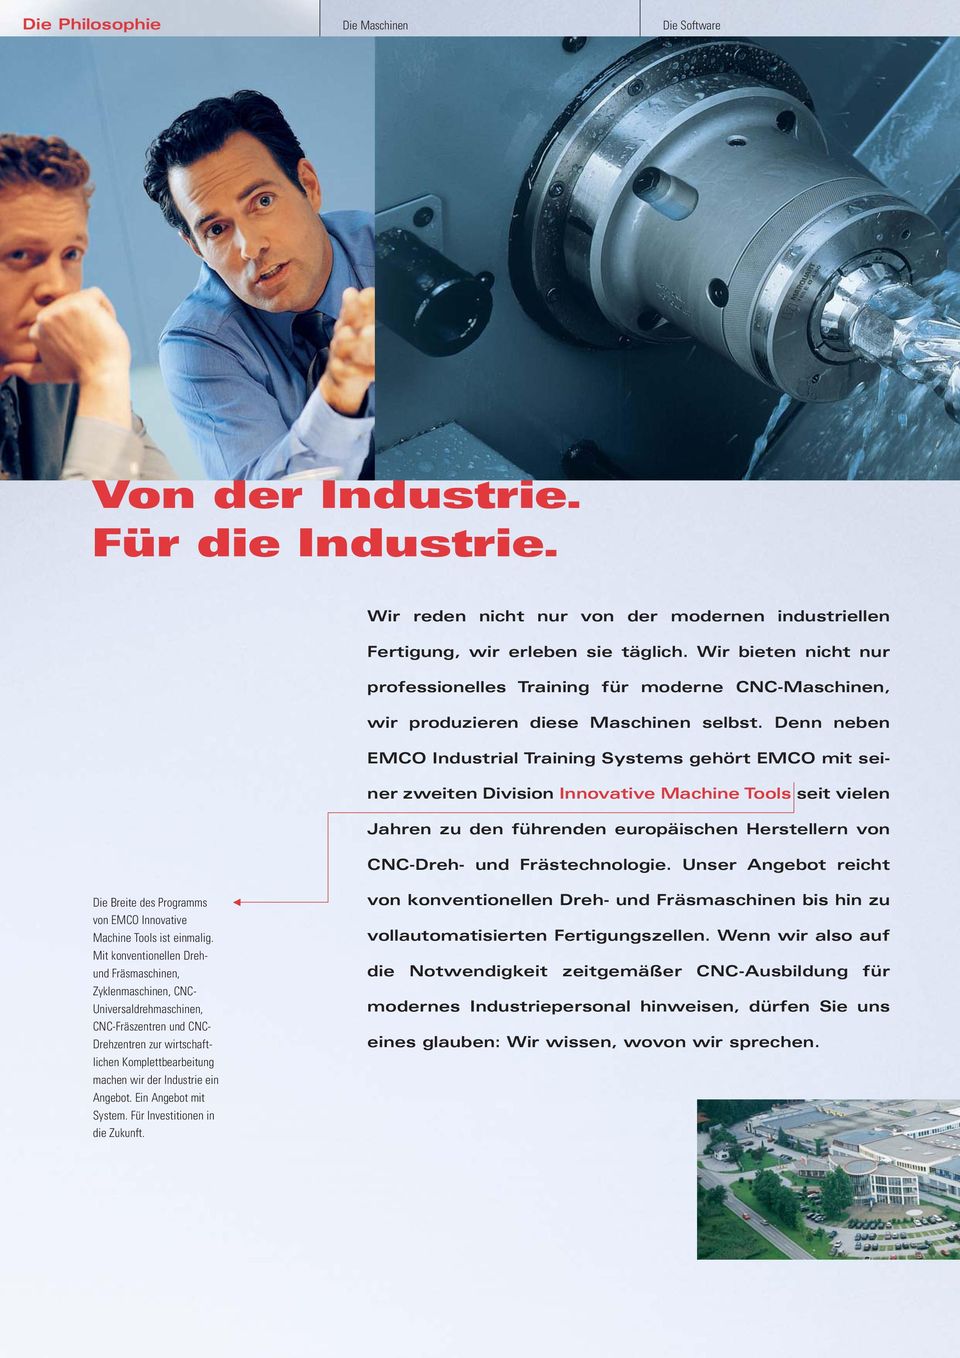 Denn neben EMCO Industrial Training Systems gehört EMCO mit seiner zweiten Division Innovative Machine Tools seit vielen Jahren zu den führenden europäischen Herstellern von CNC-Dreh- und